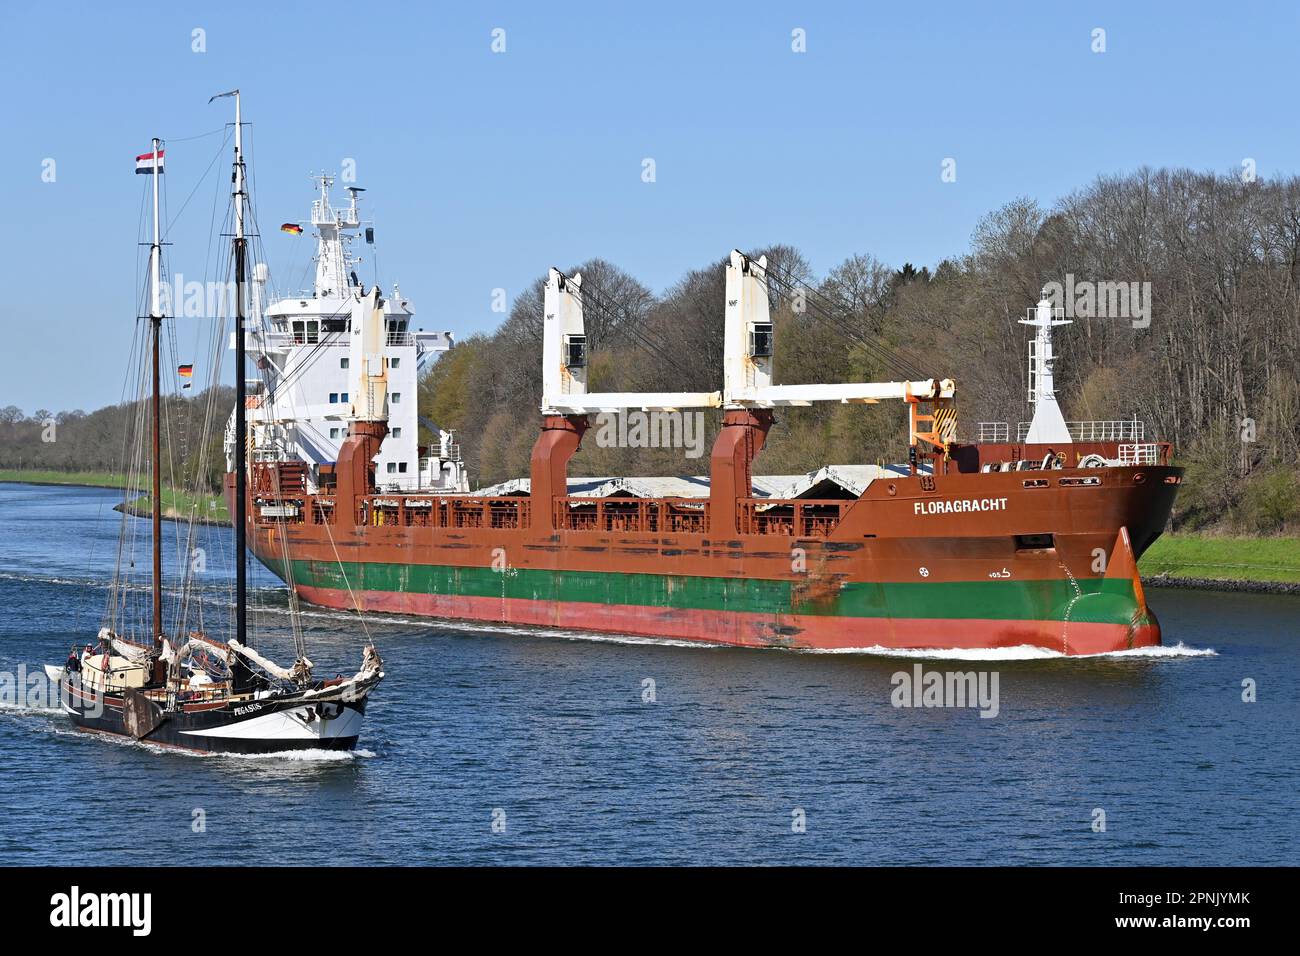 Generazioni di navi olandesi sul canale di Kiel: La General Cargo Ship FLORAGRACHT (costruito nel 2011) supera Klipper PEGASUS (costruito nel 1904) Foto Stock